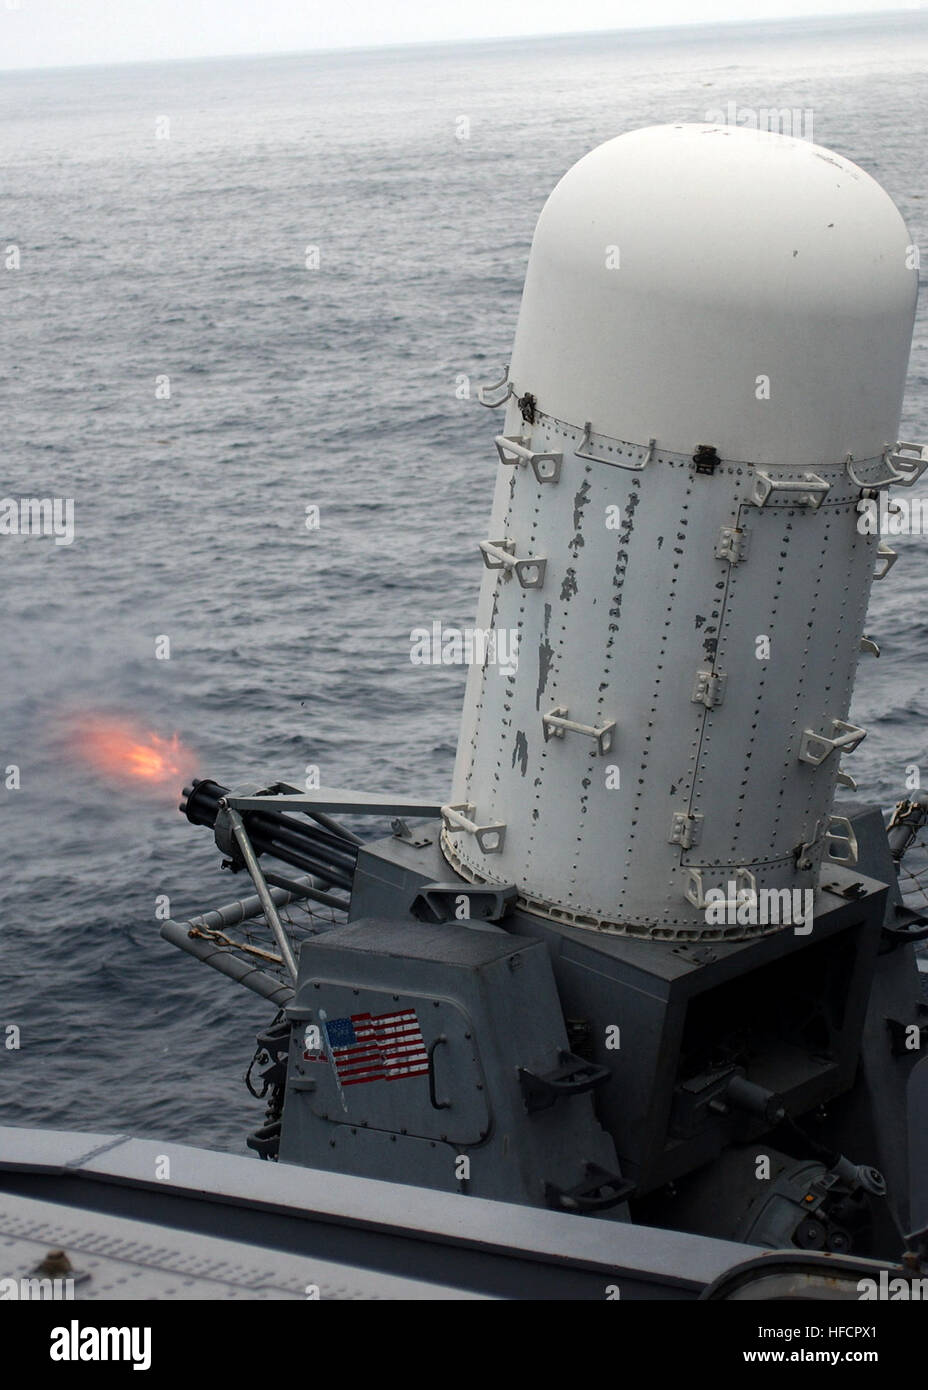 060605-N-6363M-004-Pazifik (5. Juni 2006) - führt die Nimitz-Klasse Flugzeugträger USS John C. Stennis (CVN-74) Kampfsysteme Abteilung eine Trainingsübung Close-in Weapons System (CIWS) scharfer Munition. Die CIWS ist eine schnelle Reaktion, Schnellfeuer 20-Millimeter-Pistole System Schiffe der US Navy mit einer Klemme Verteidigung gegen Anti-Schiff-Raketen und littoral Warfare Bedrohungen, die andere Flotte Verteidigung eingedrungen sind. Das System erkennt automatisch, verfolgt und greift Anti-Luft-Kriegsführung Bedrohungen wie Anti-Schiff-Raketen und Flugzeuge. Stennis führt derzeit Ausbildung oper Stockfoto